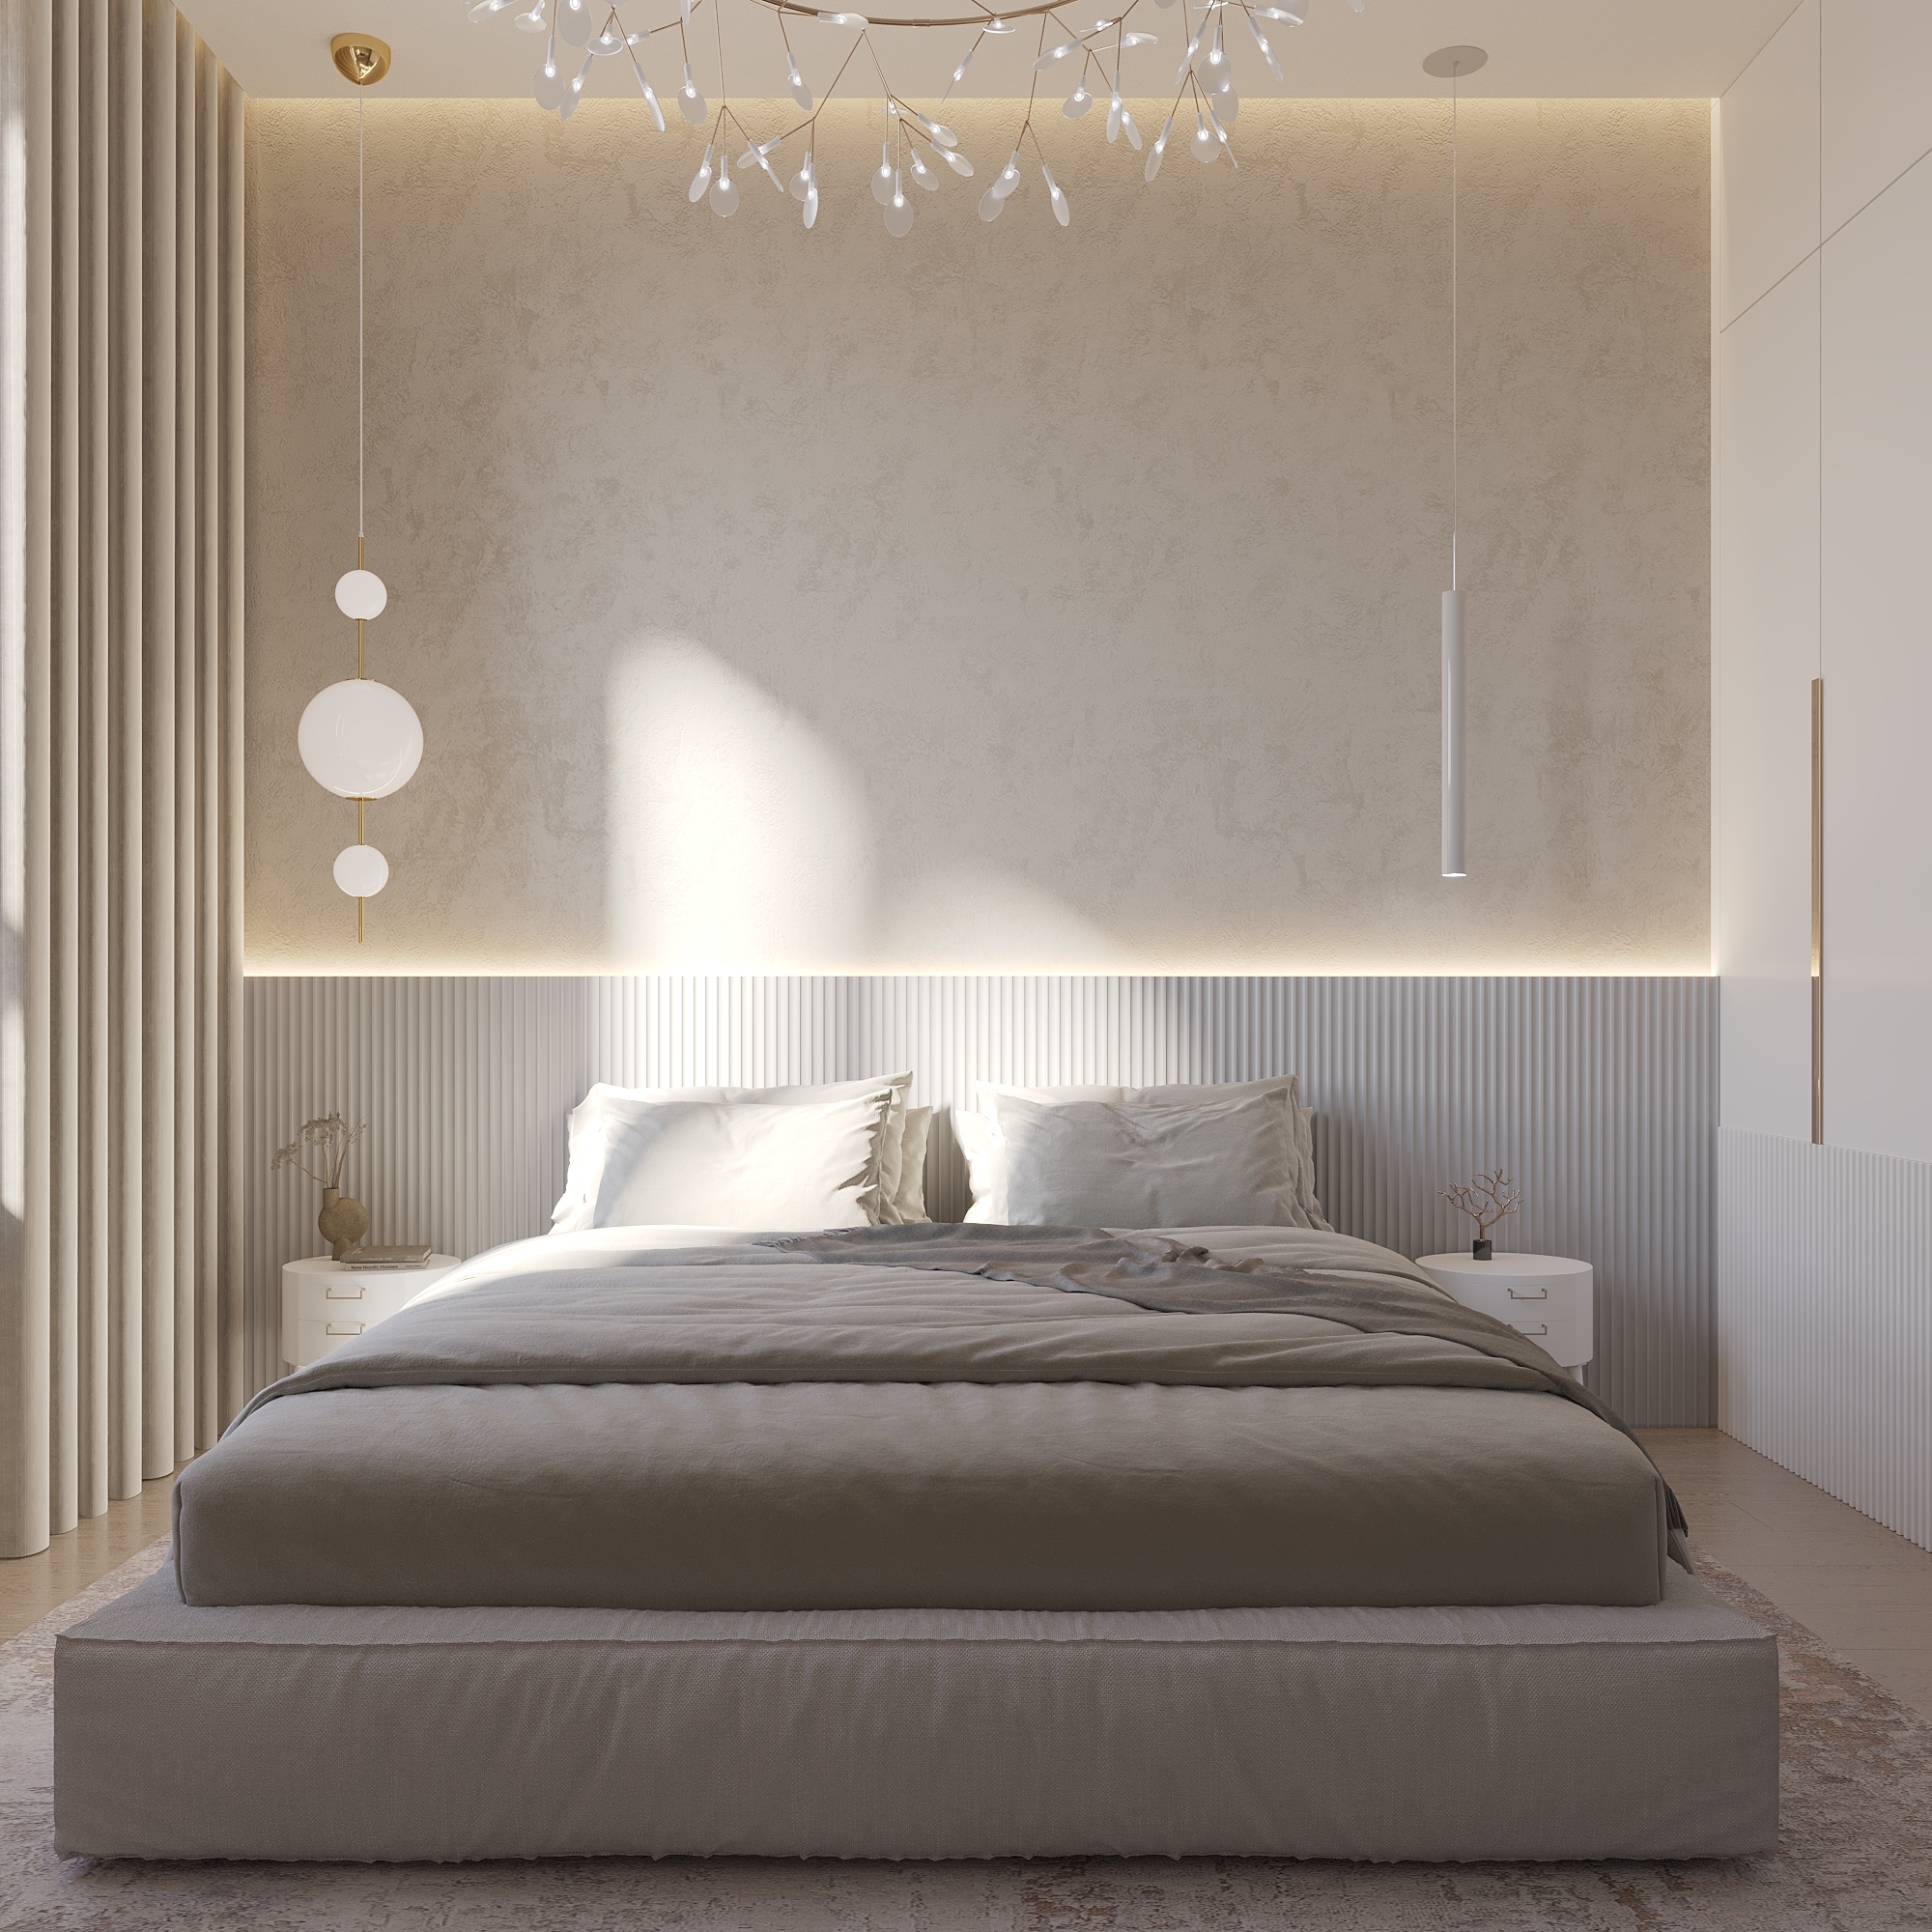 Интерьер спальни с бра над кроватью, светильниками над кроватью и с подсветкой